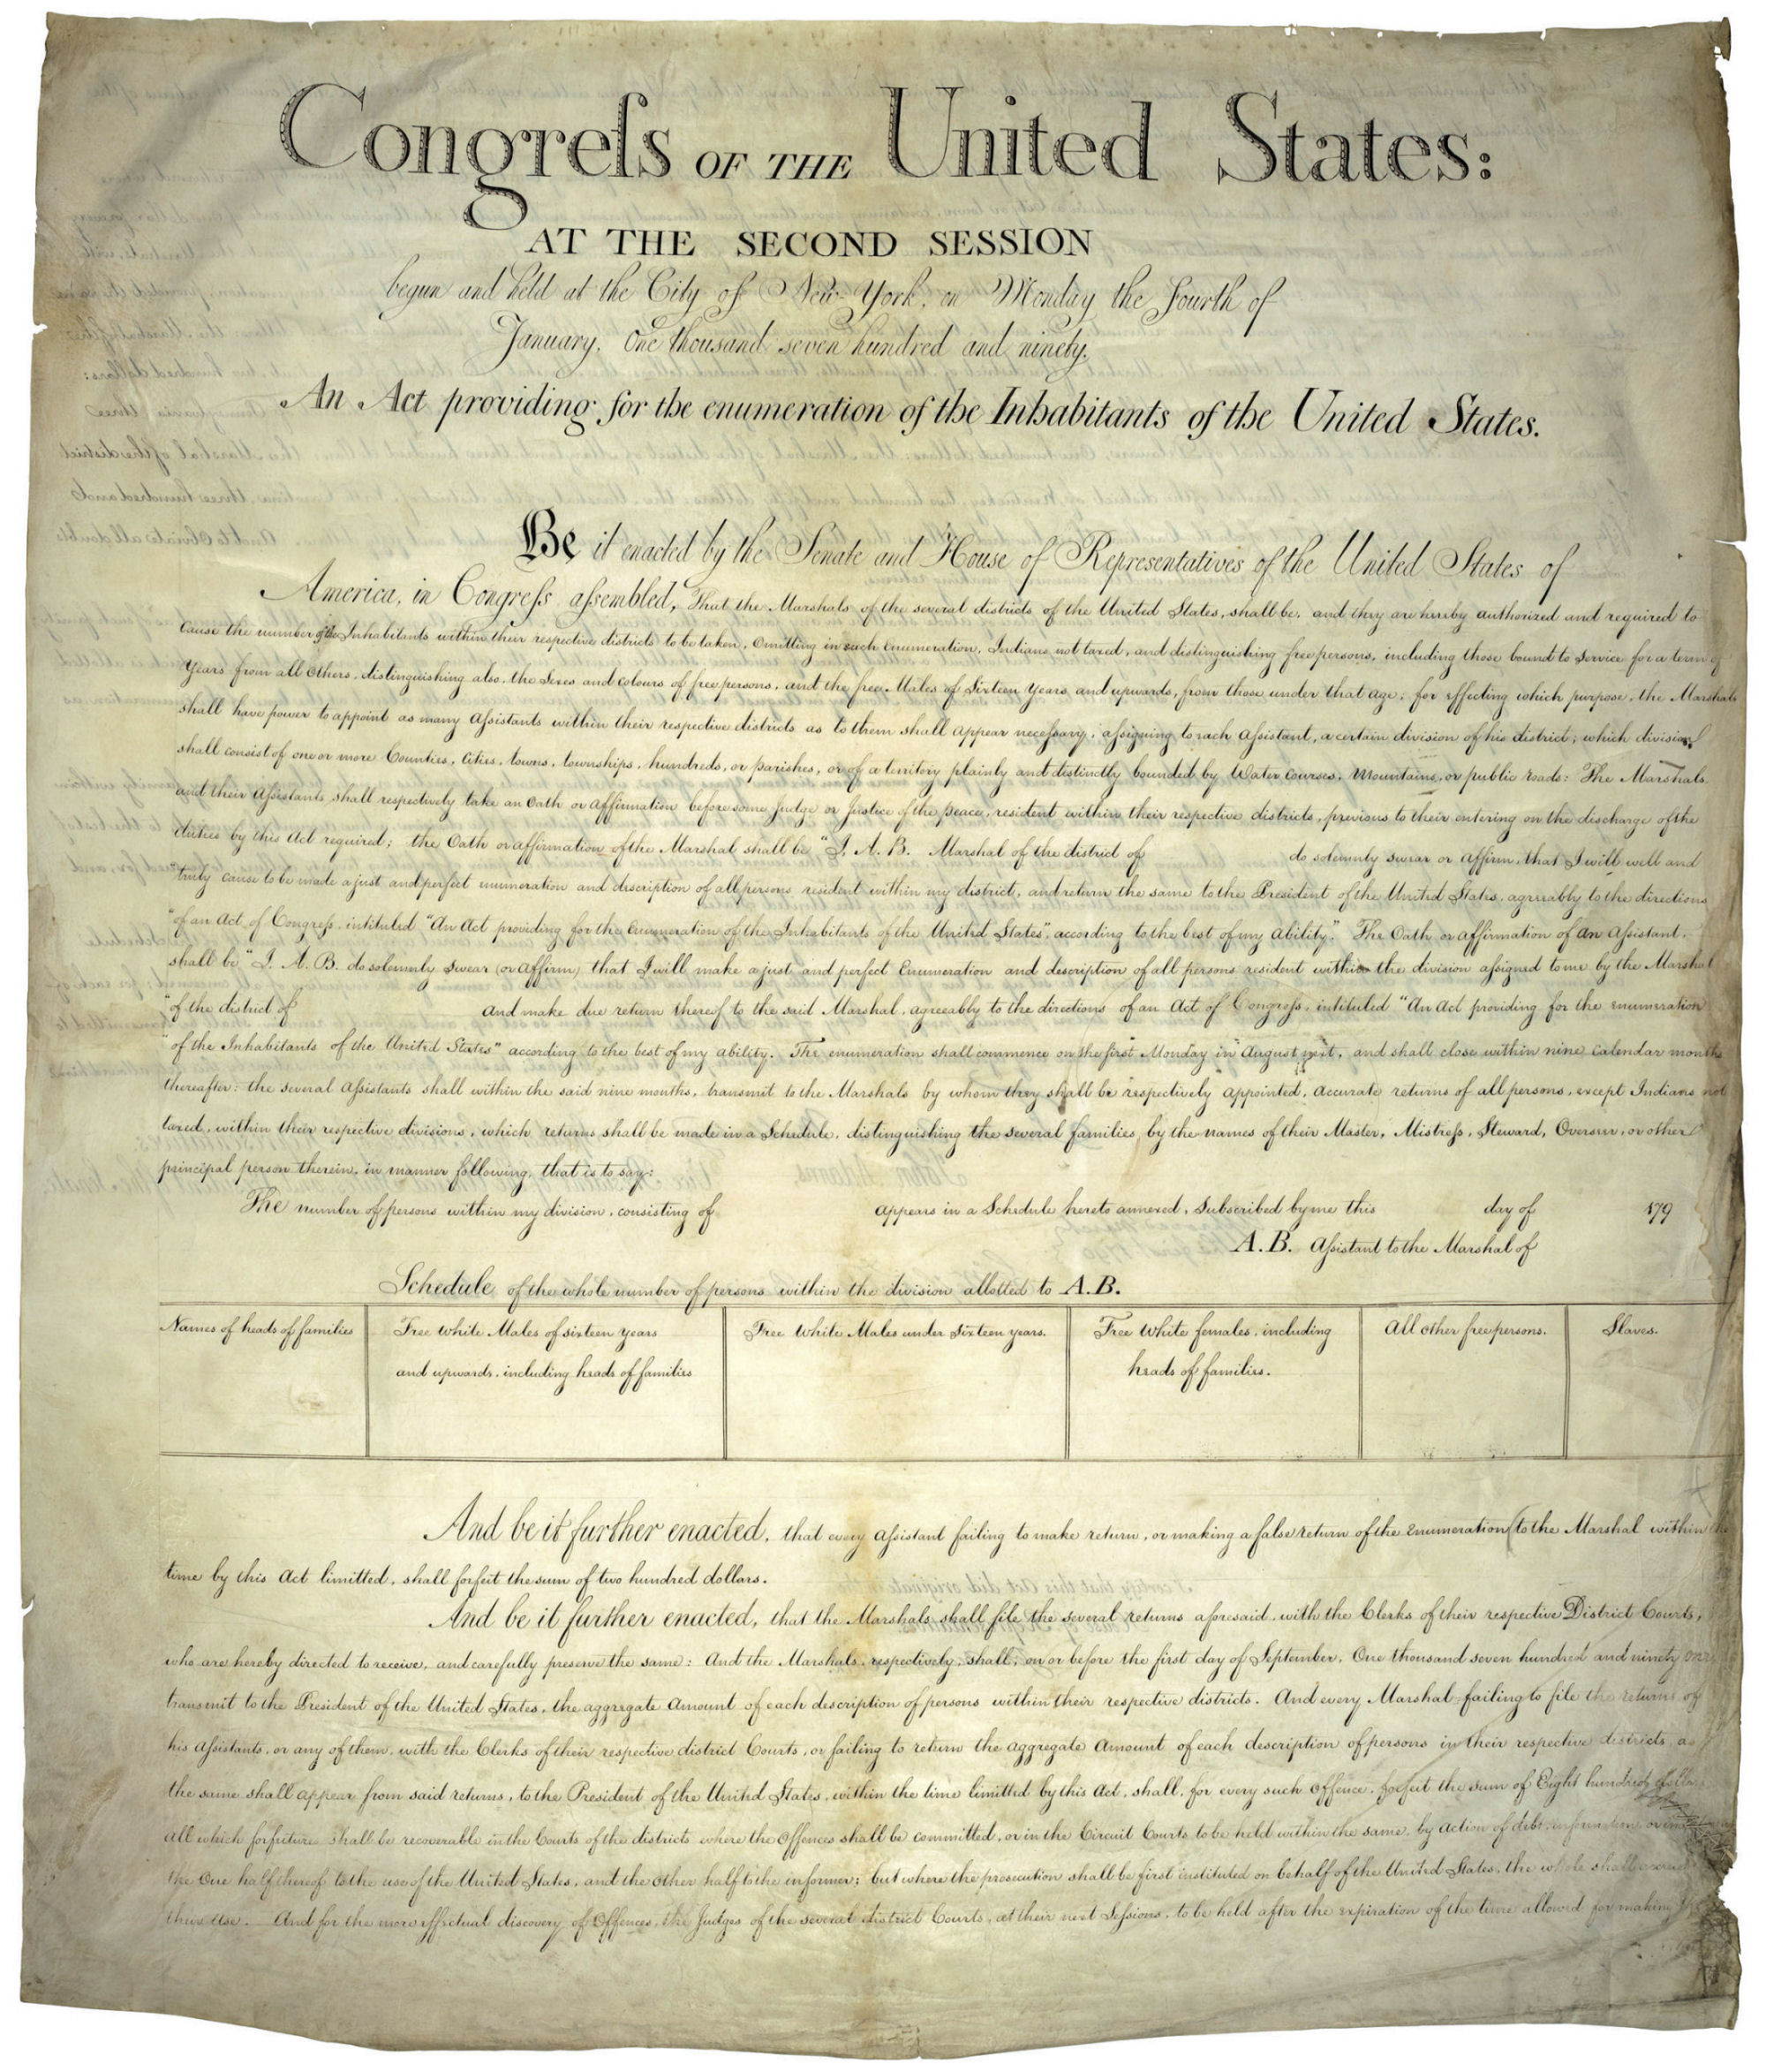 1790 Census Act